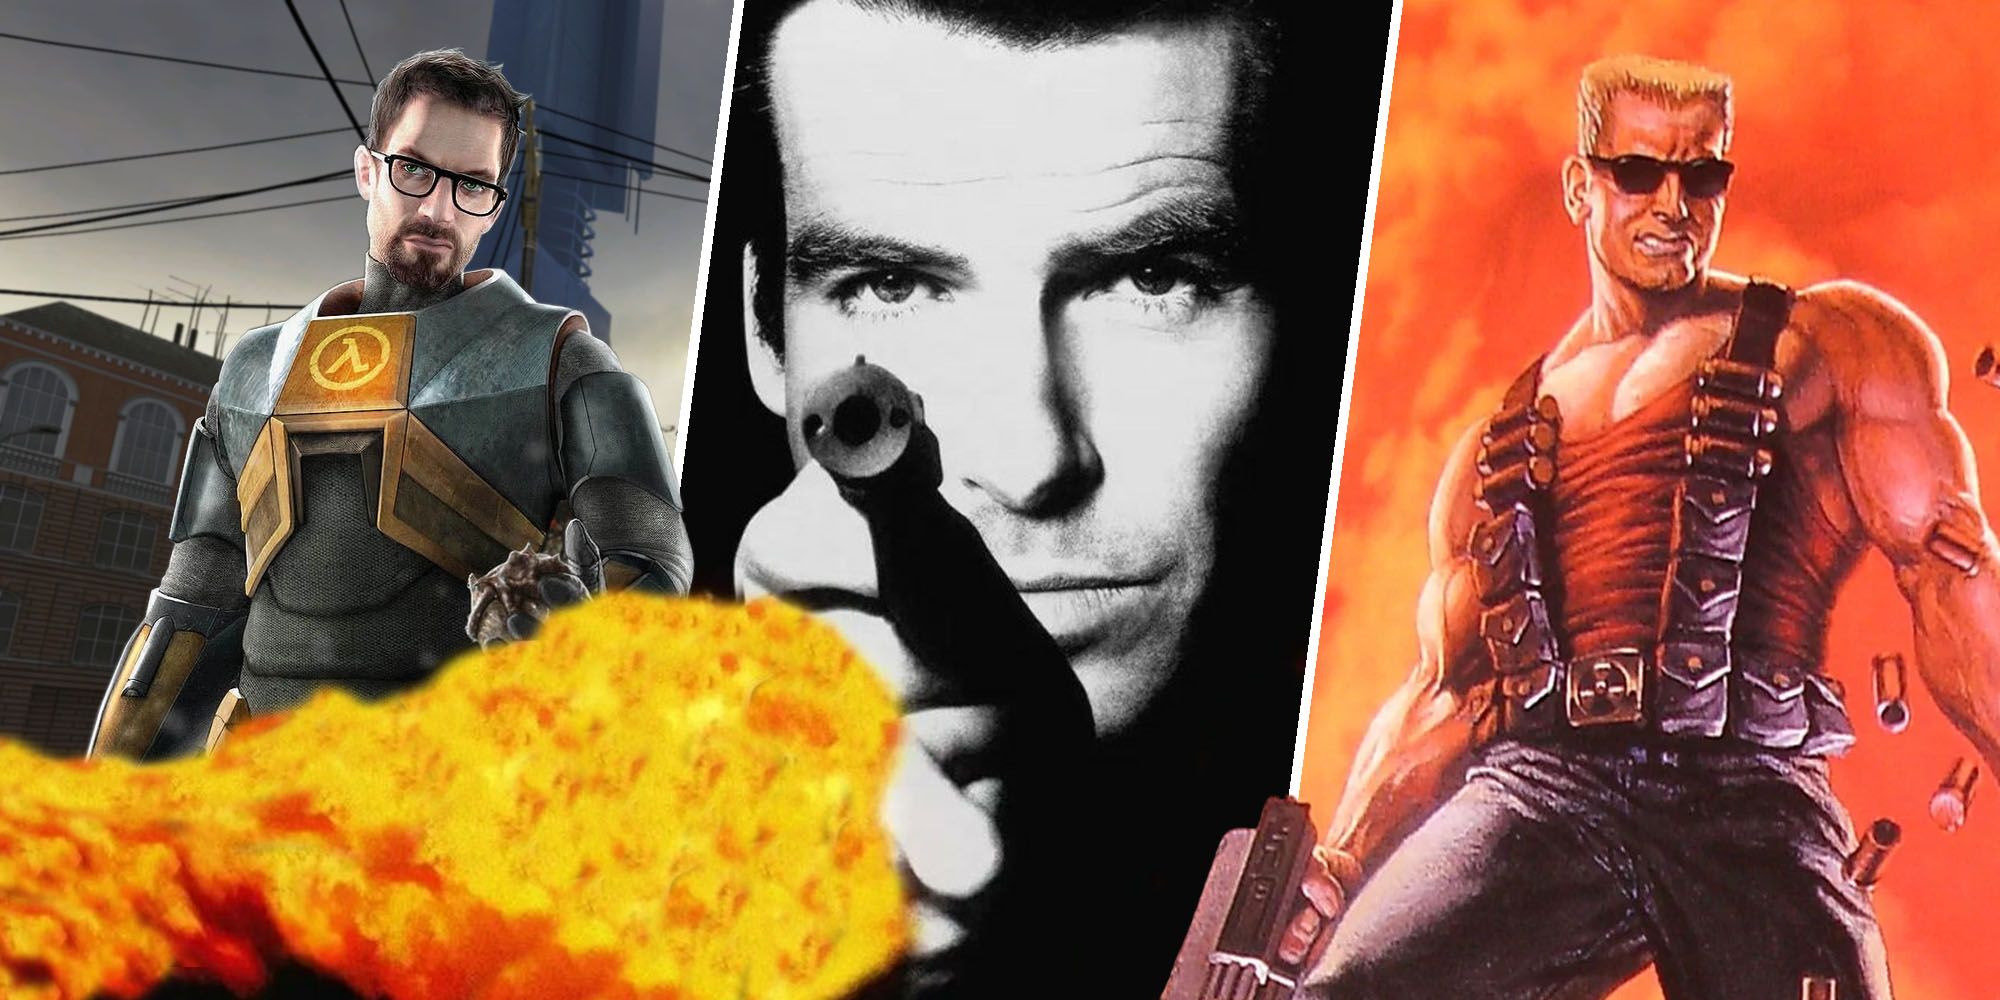 Half-Life 2, Goldeneye 007, and Duke Nukem 3D